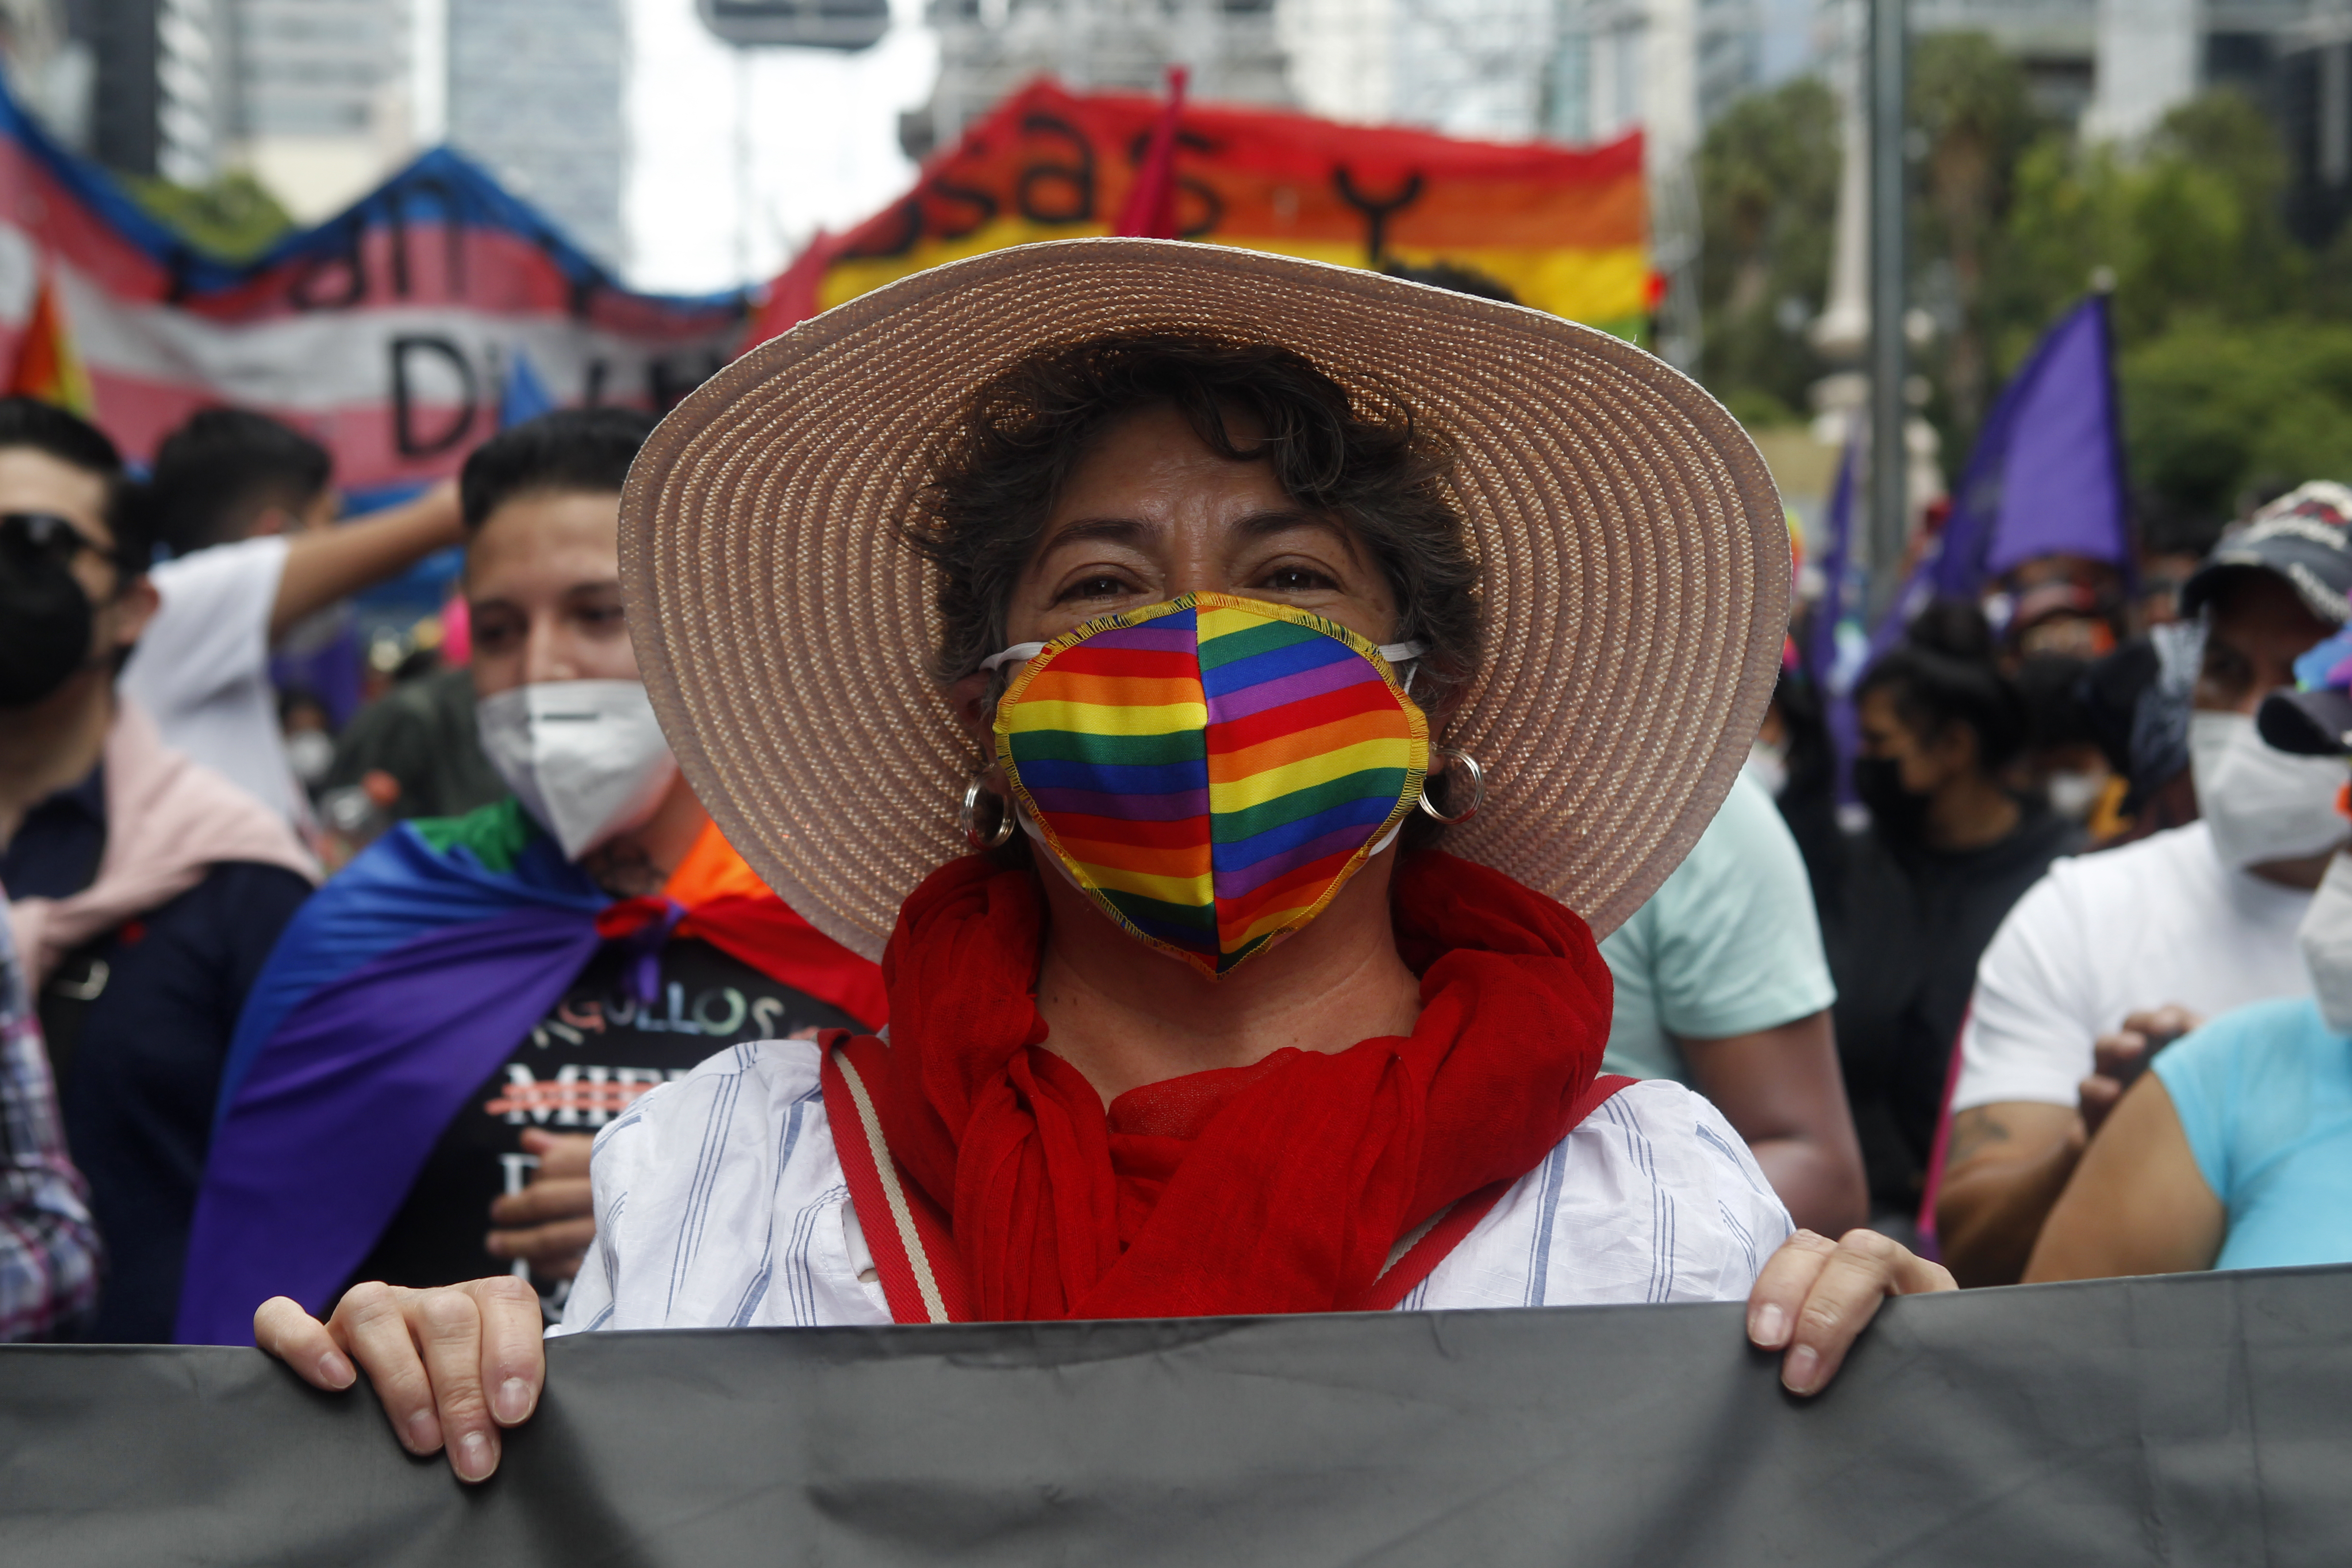 La marcha tiene como propósito promover la diversidad libre de odio
(Foto: Karina Herández / Infobae)
